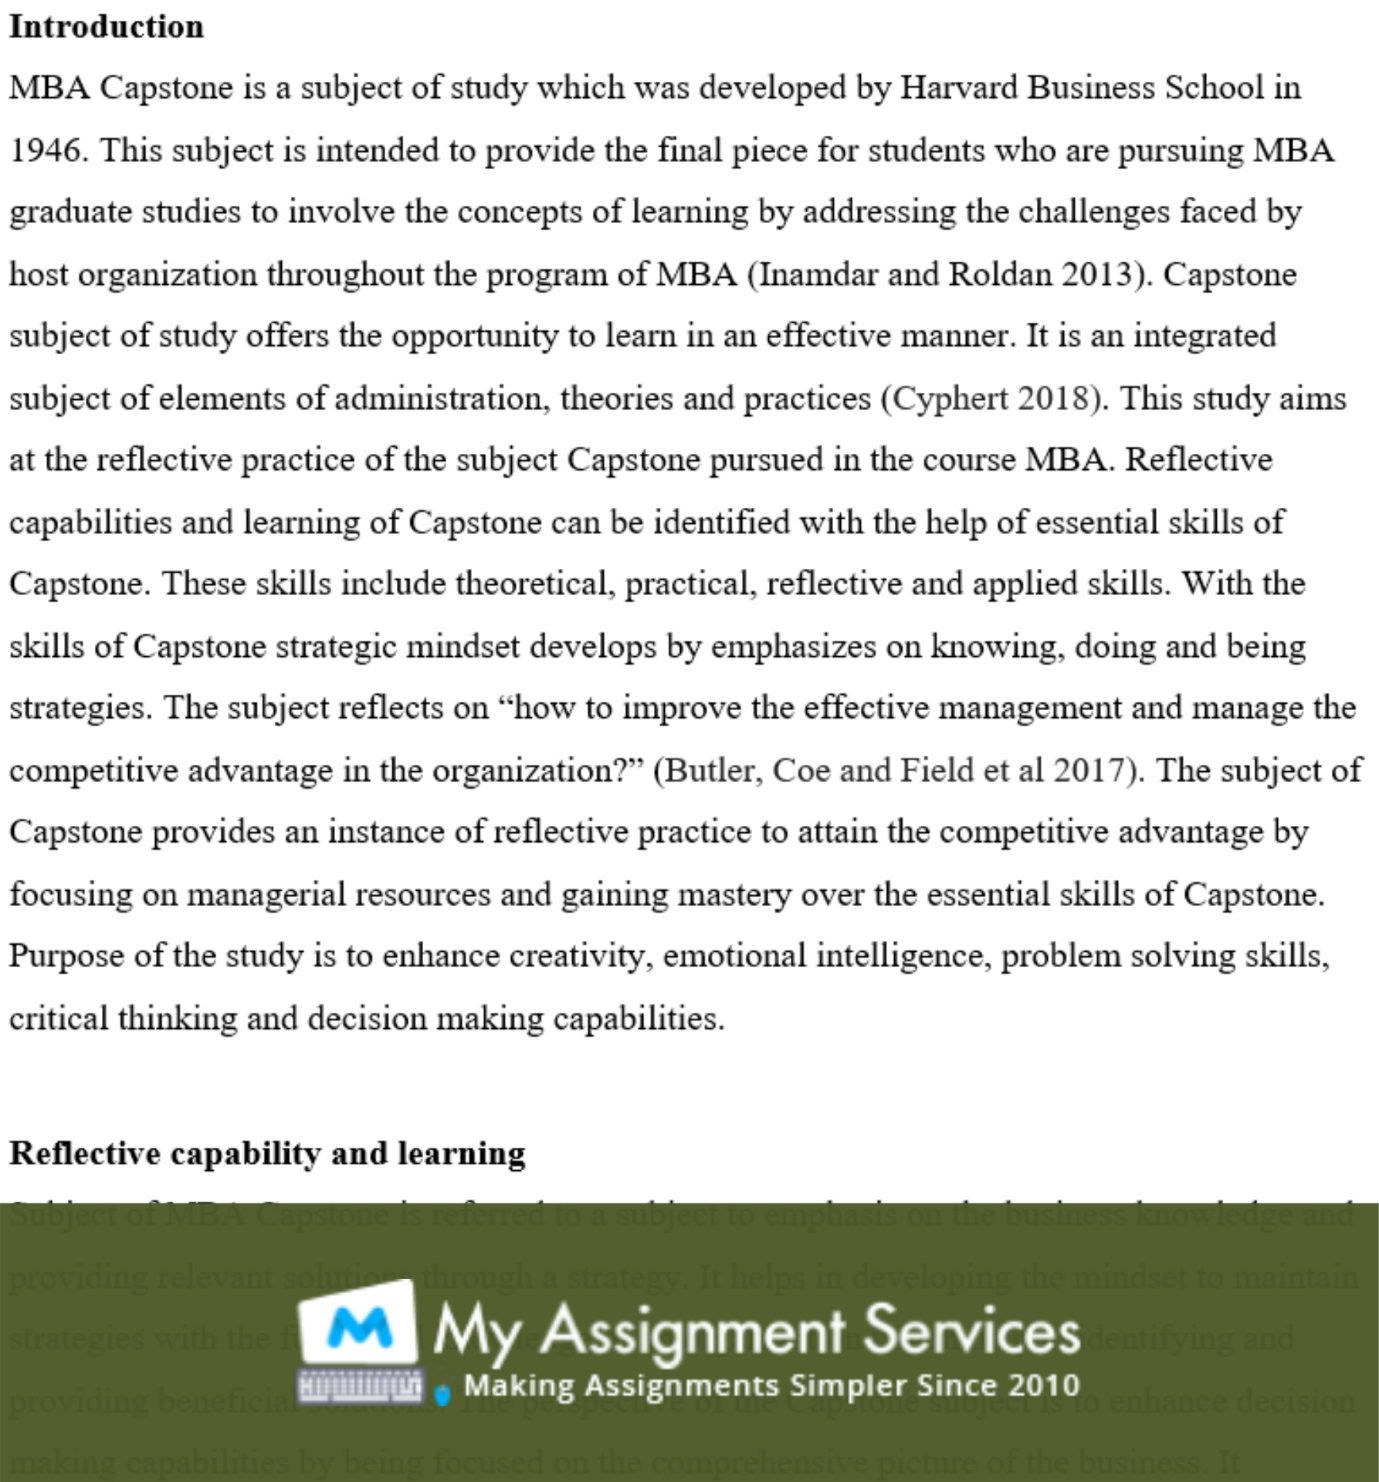 MBA essay assessment sample 2